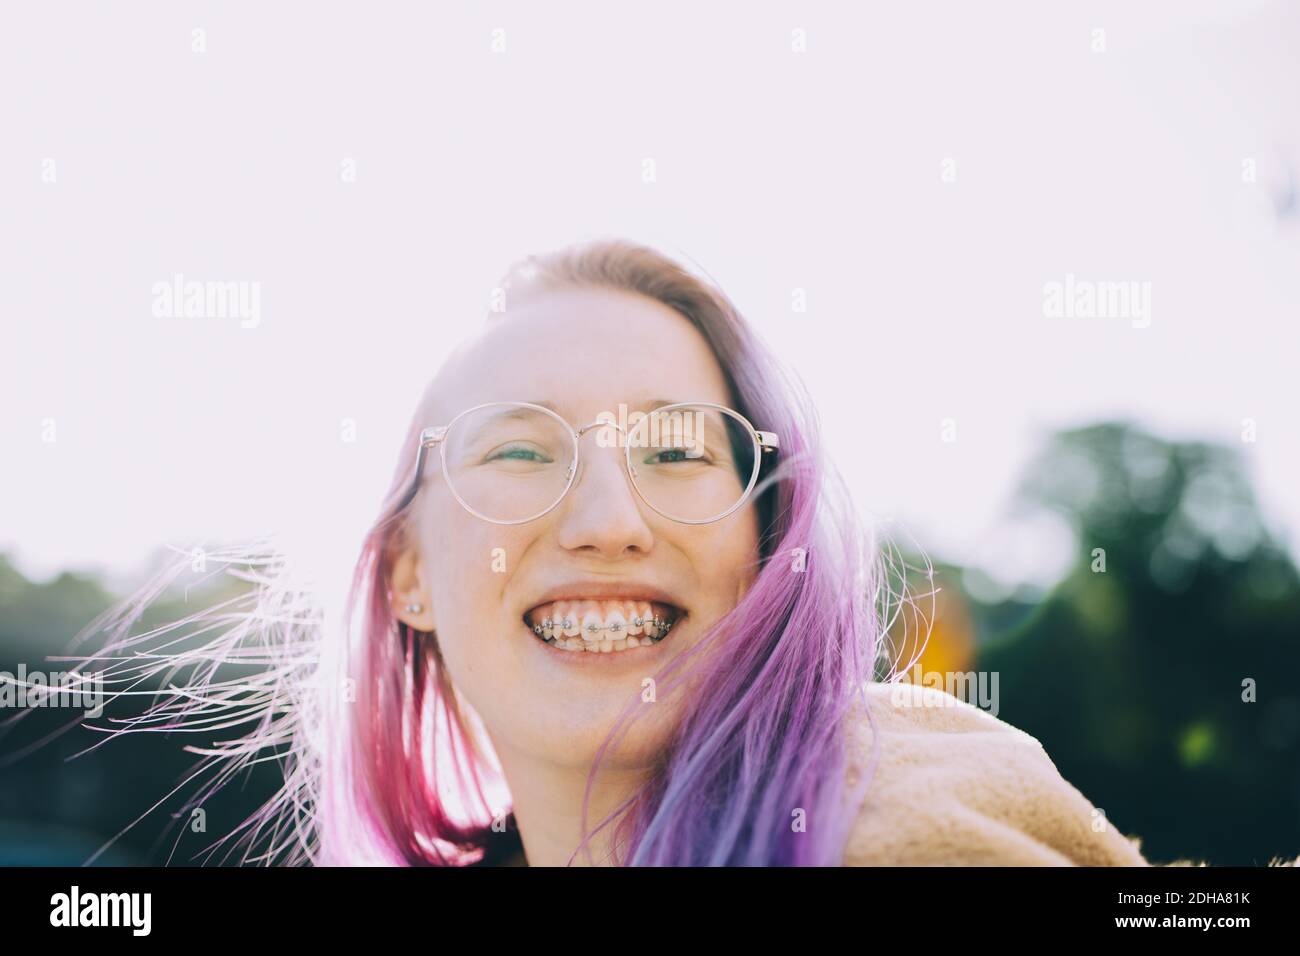 Retrato de una niña adolescente sonriente de pie contra el cielo despejado Foto de stock